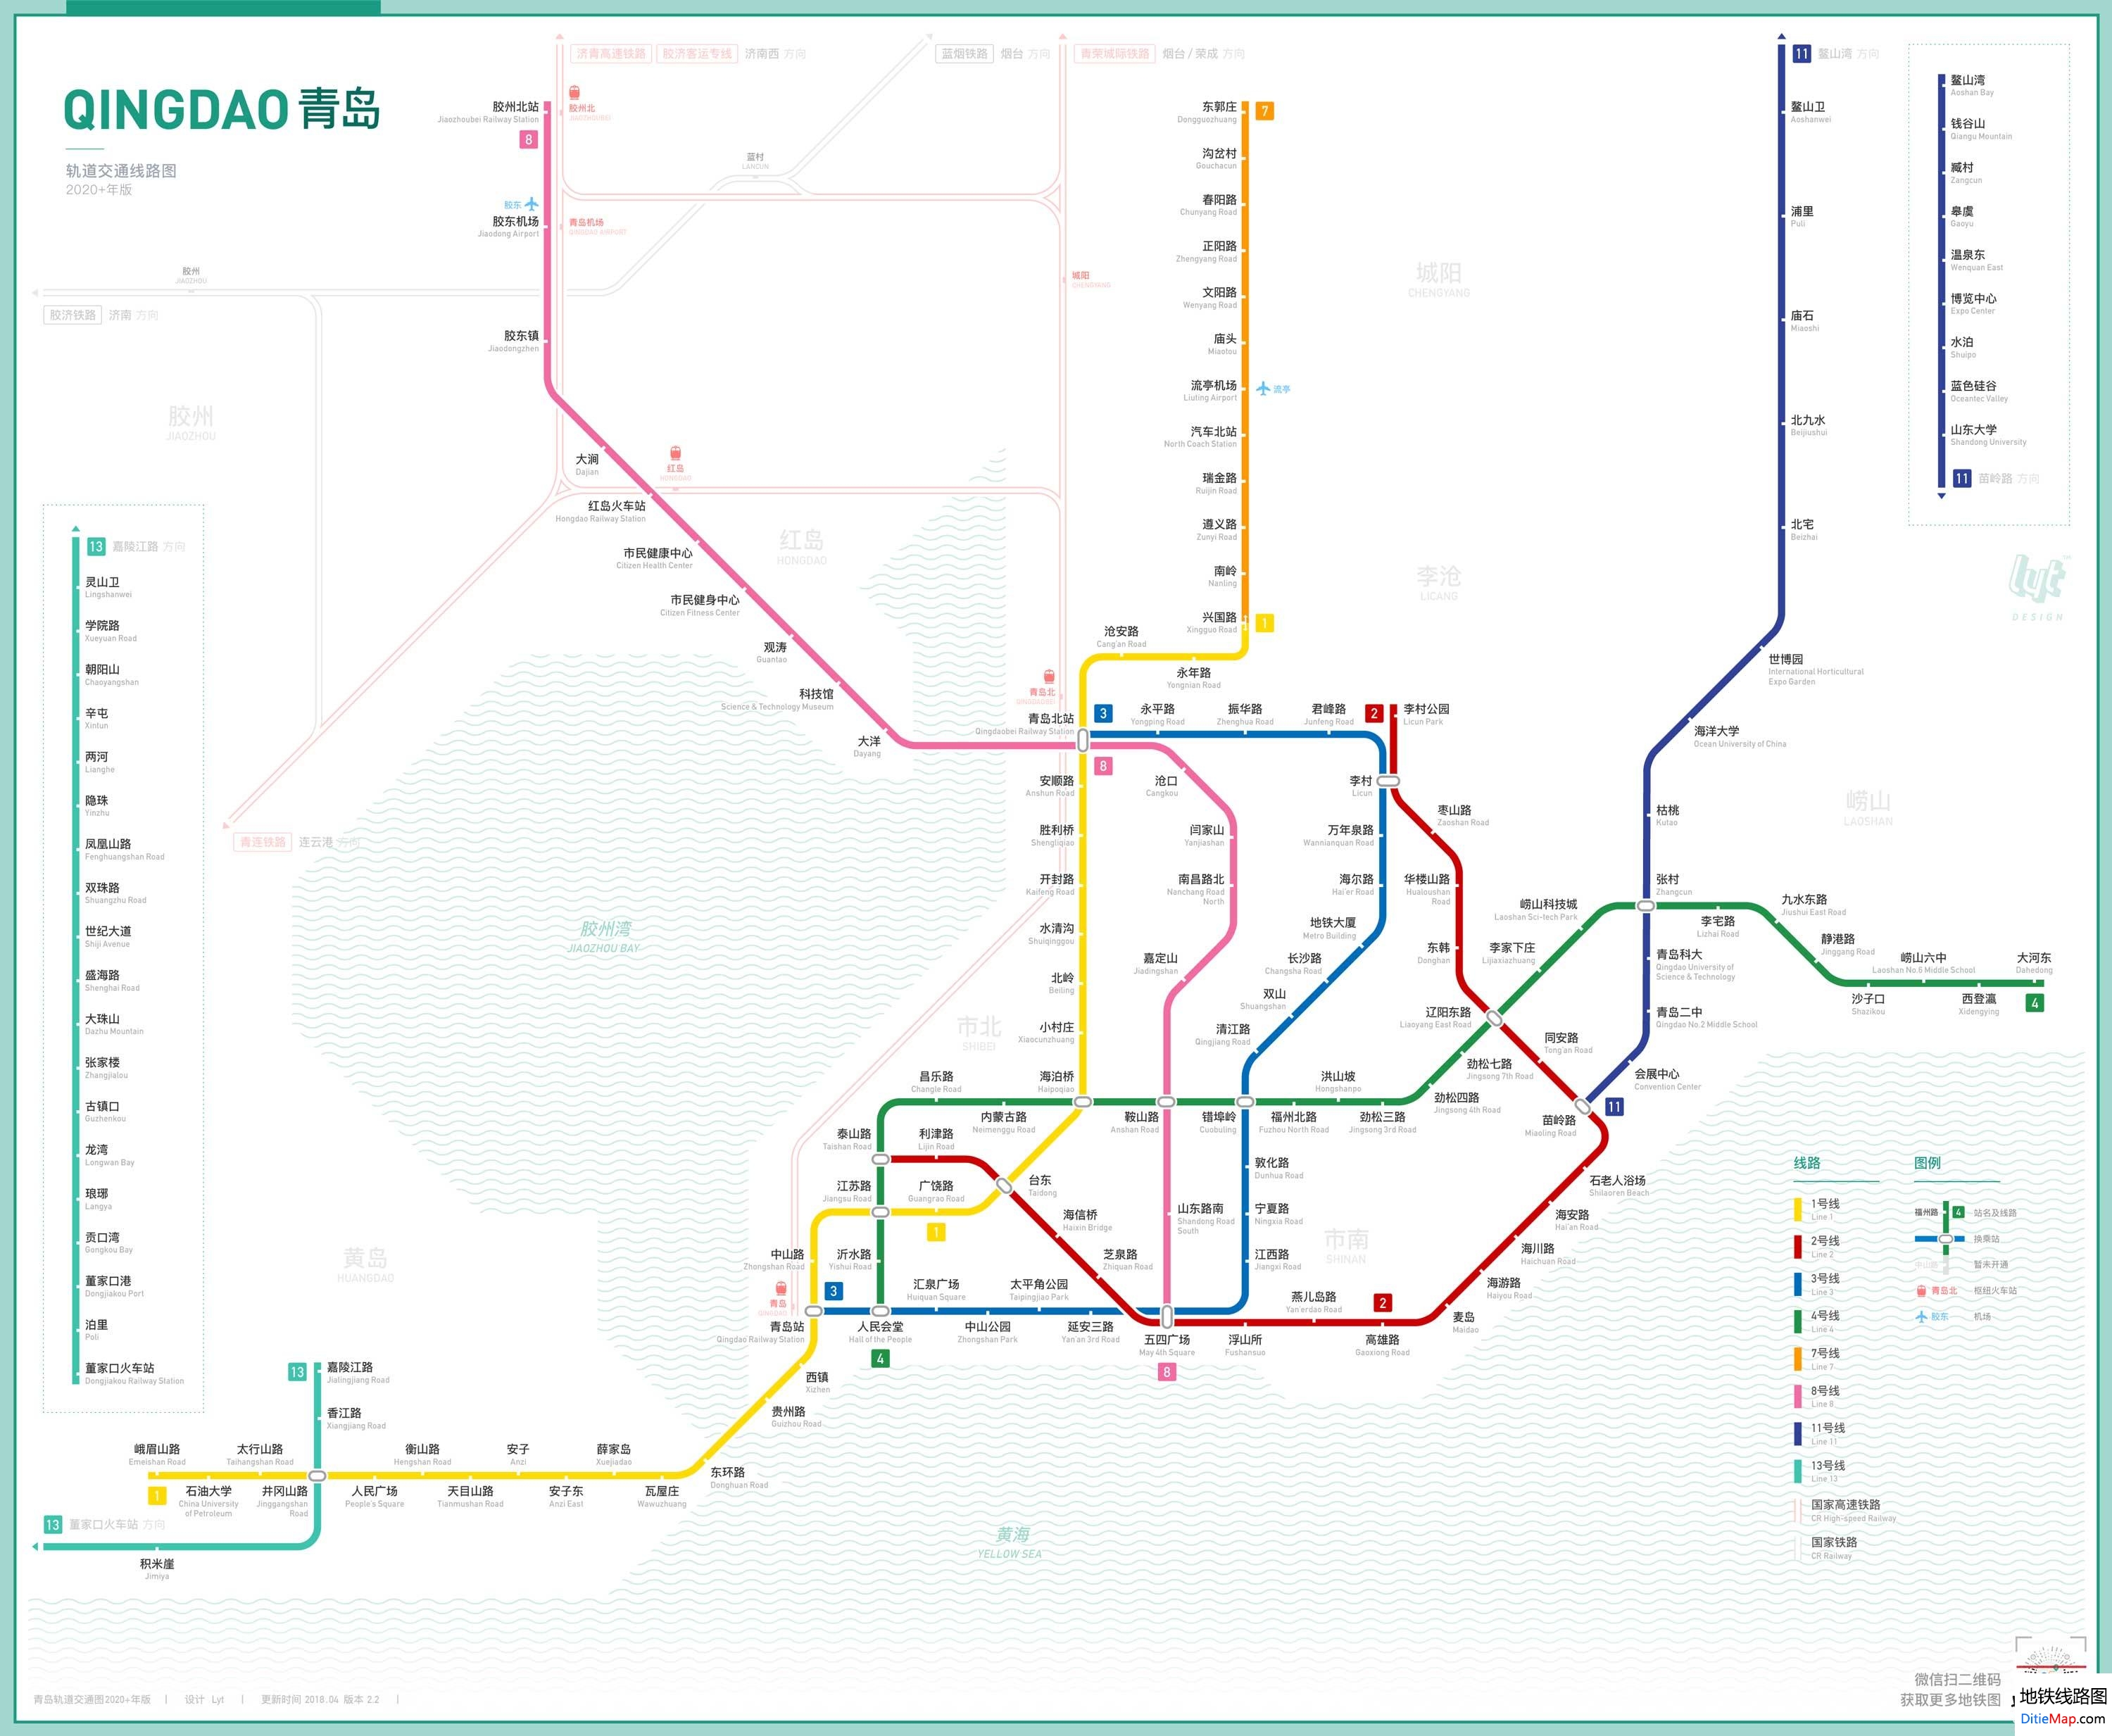 青岛地铁线路图 运营时间票价站点 查询下载 青岛地铁查询 青岛地铁